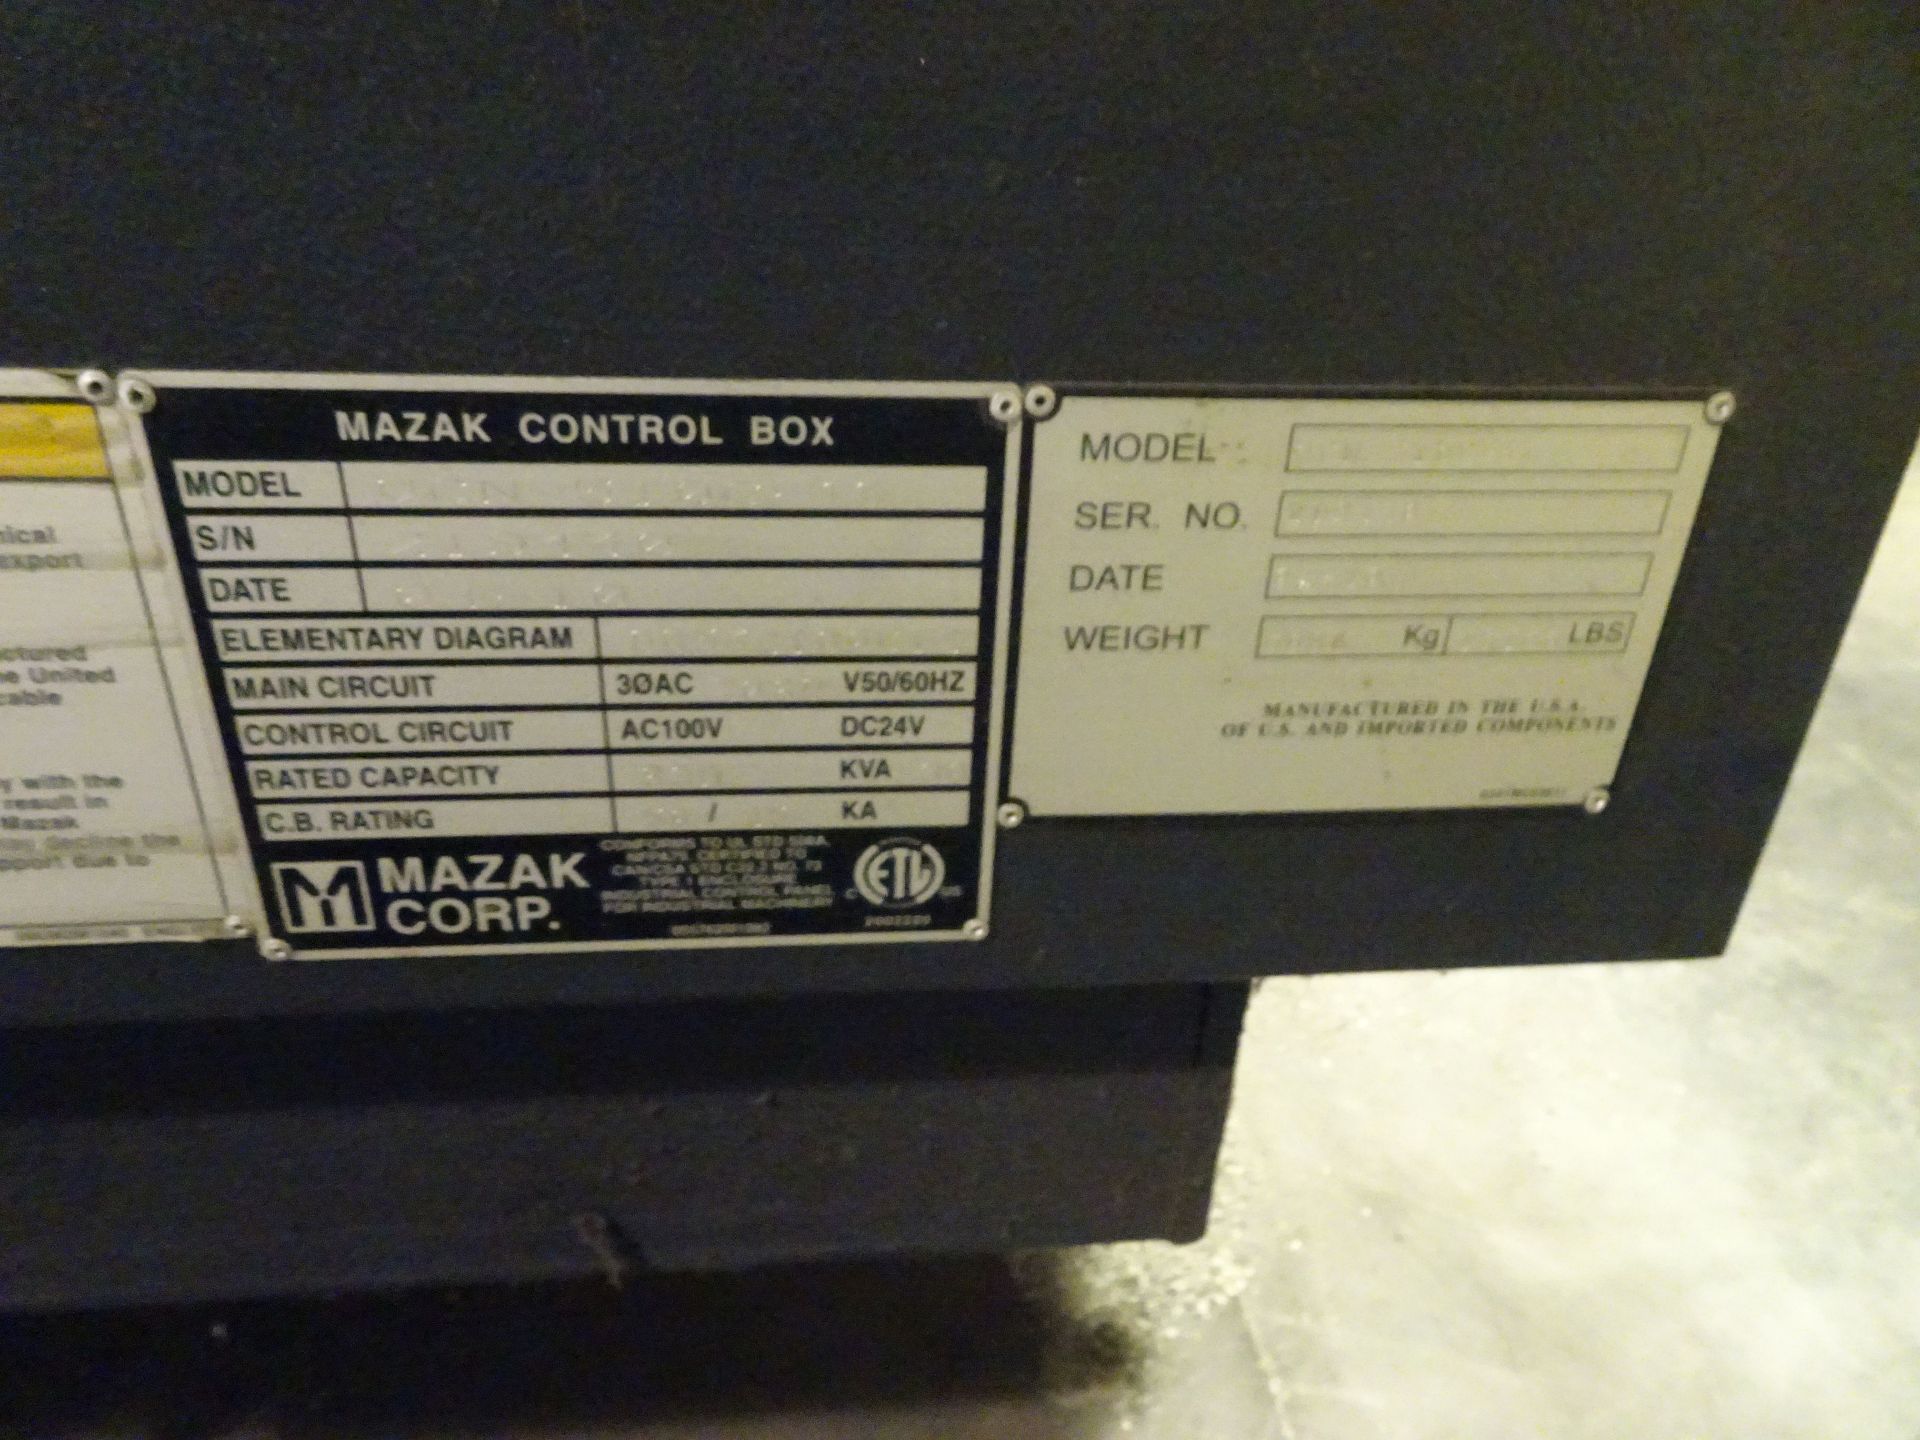 MAZAK NEXUS 510C-II CNC VERTICAL MACHINING CENTER; S/N 219440, MAZAK NEXUS MAZATROL CONTROL, 21" X - Image 7 of 12